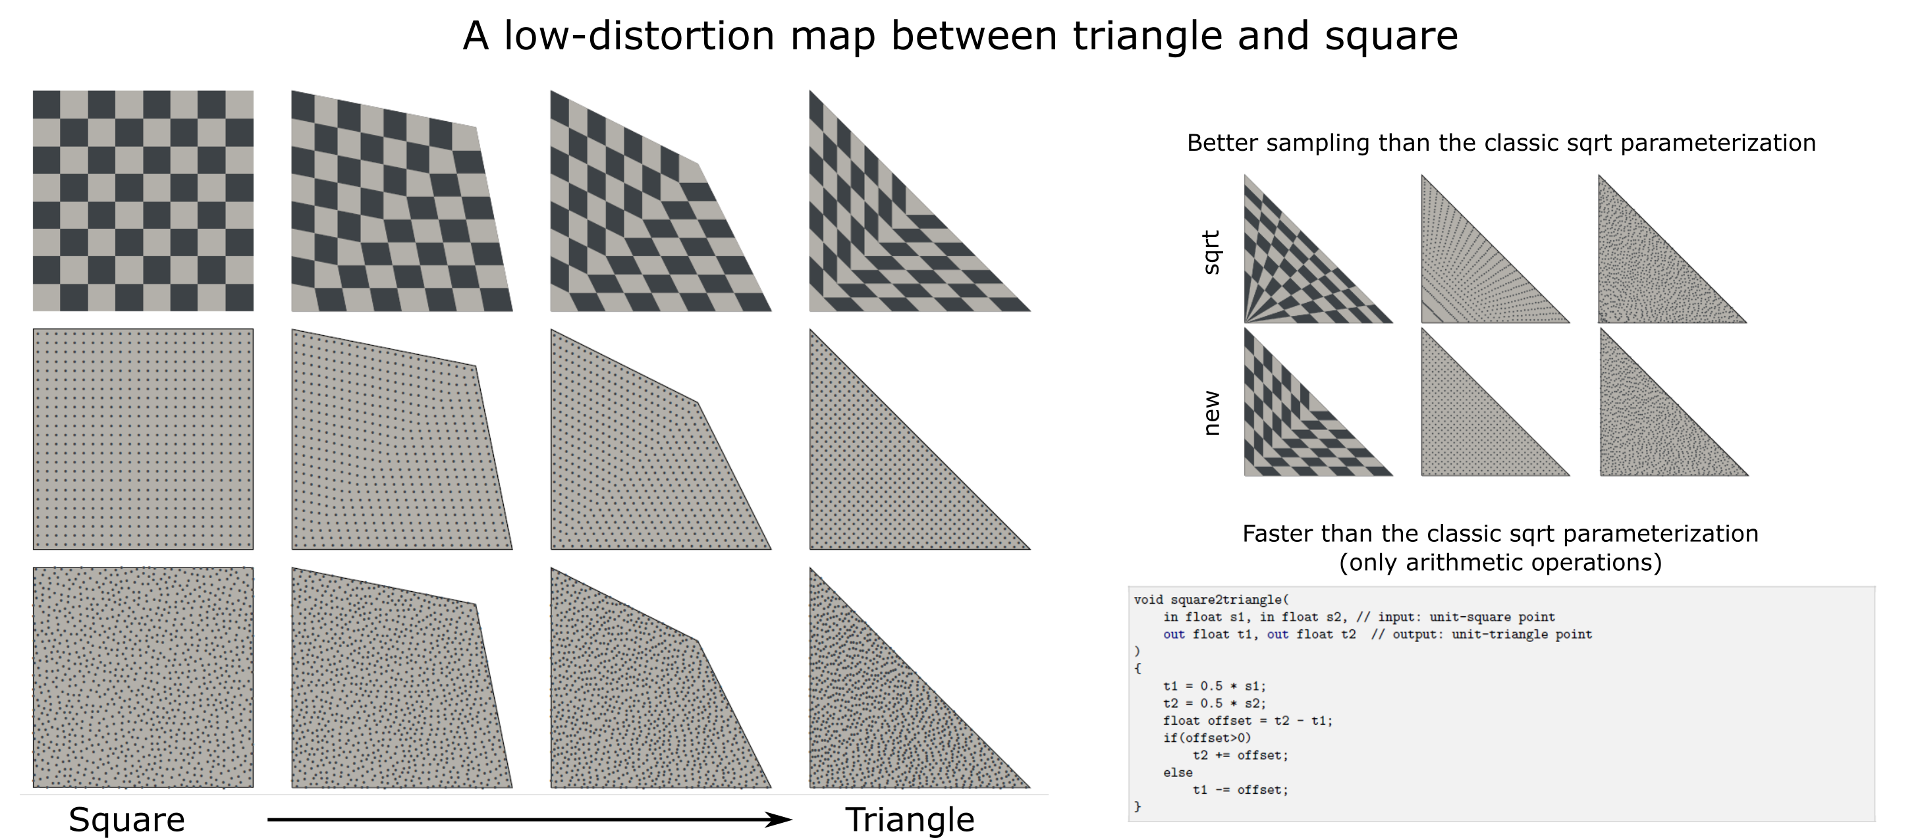 Une carte à faible distorsion entre le triangle et le carré